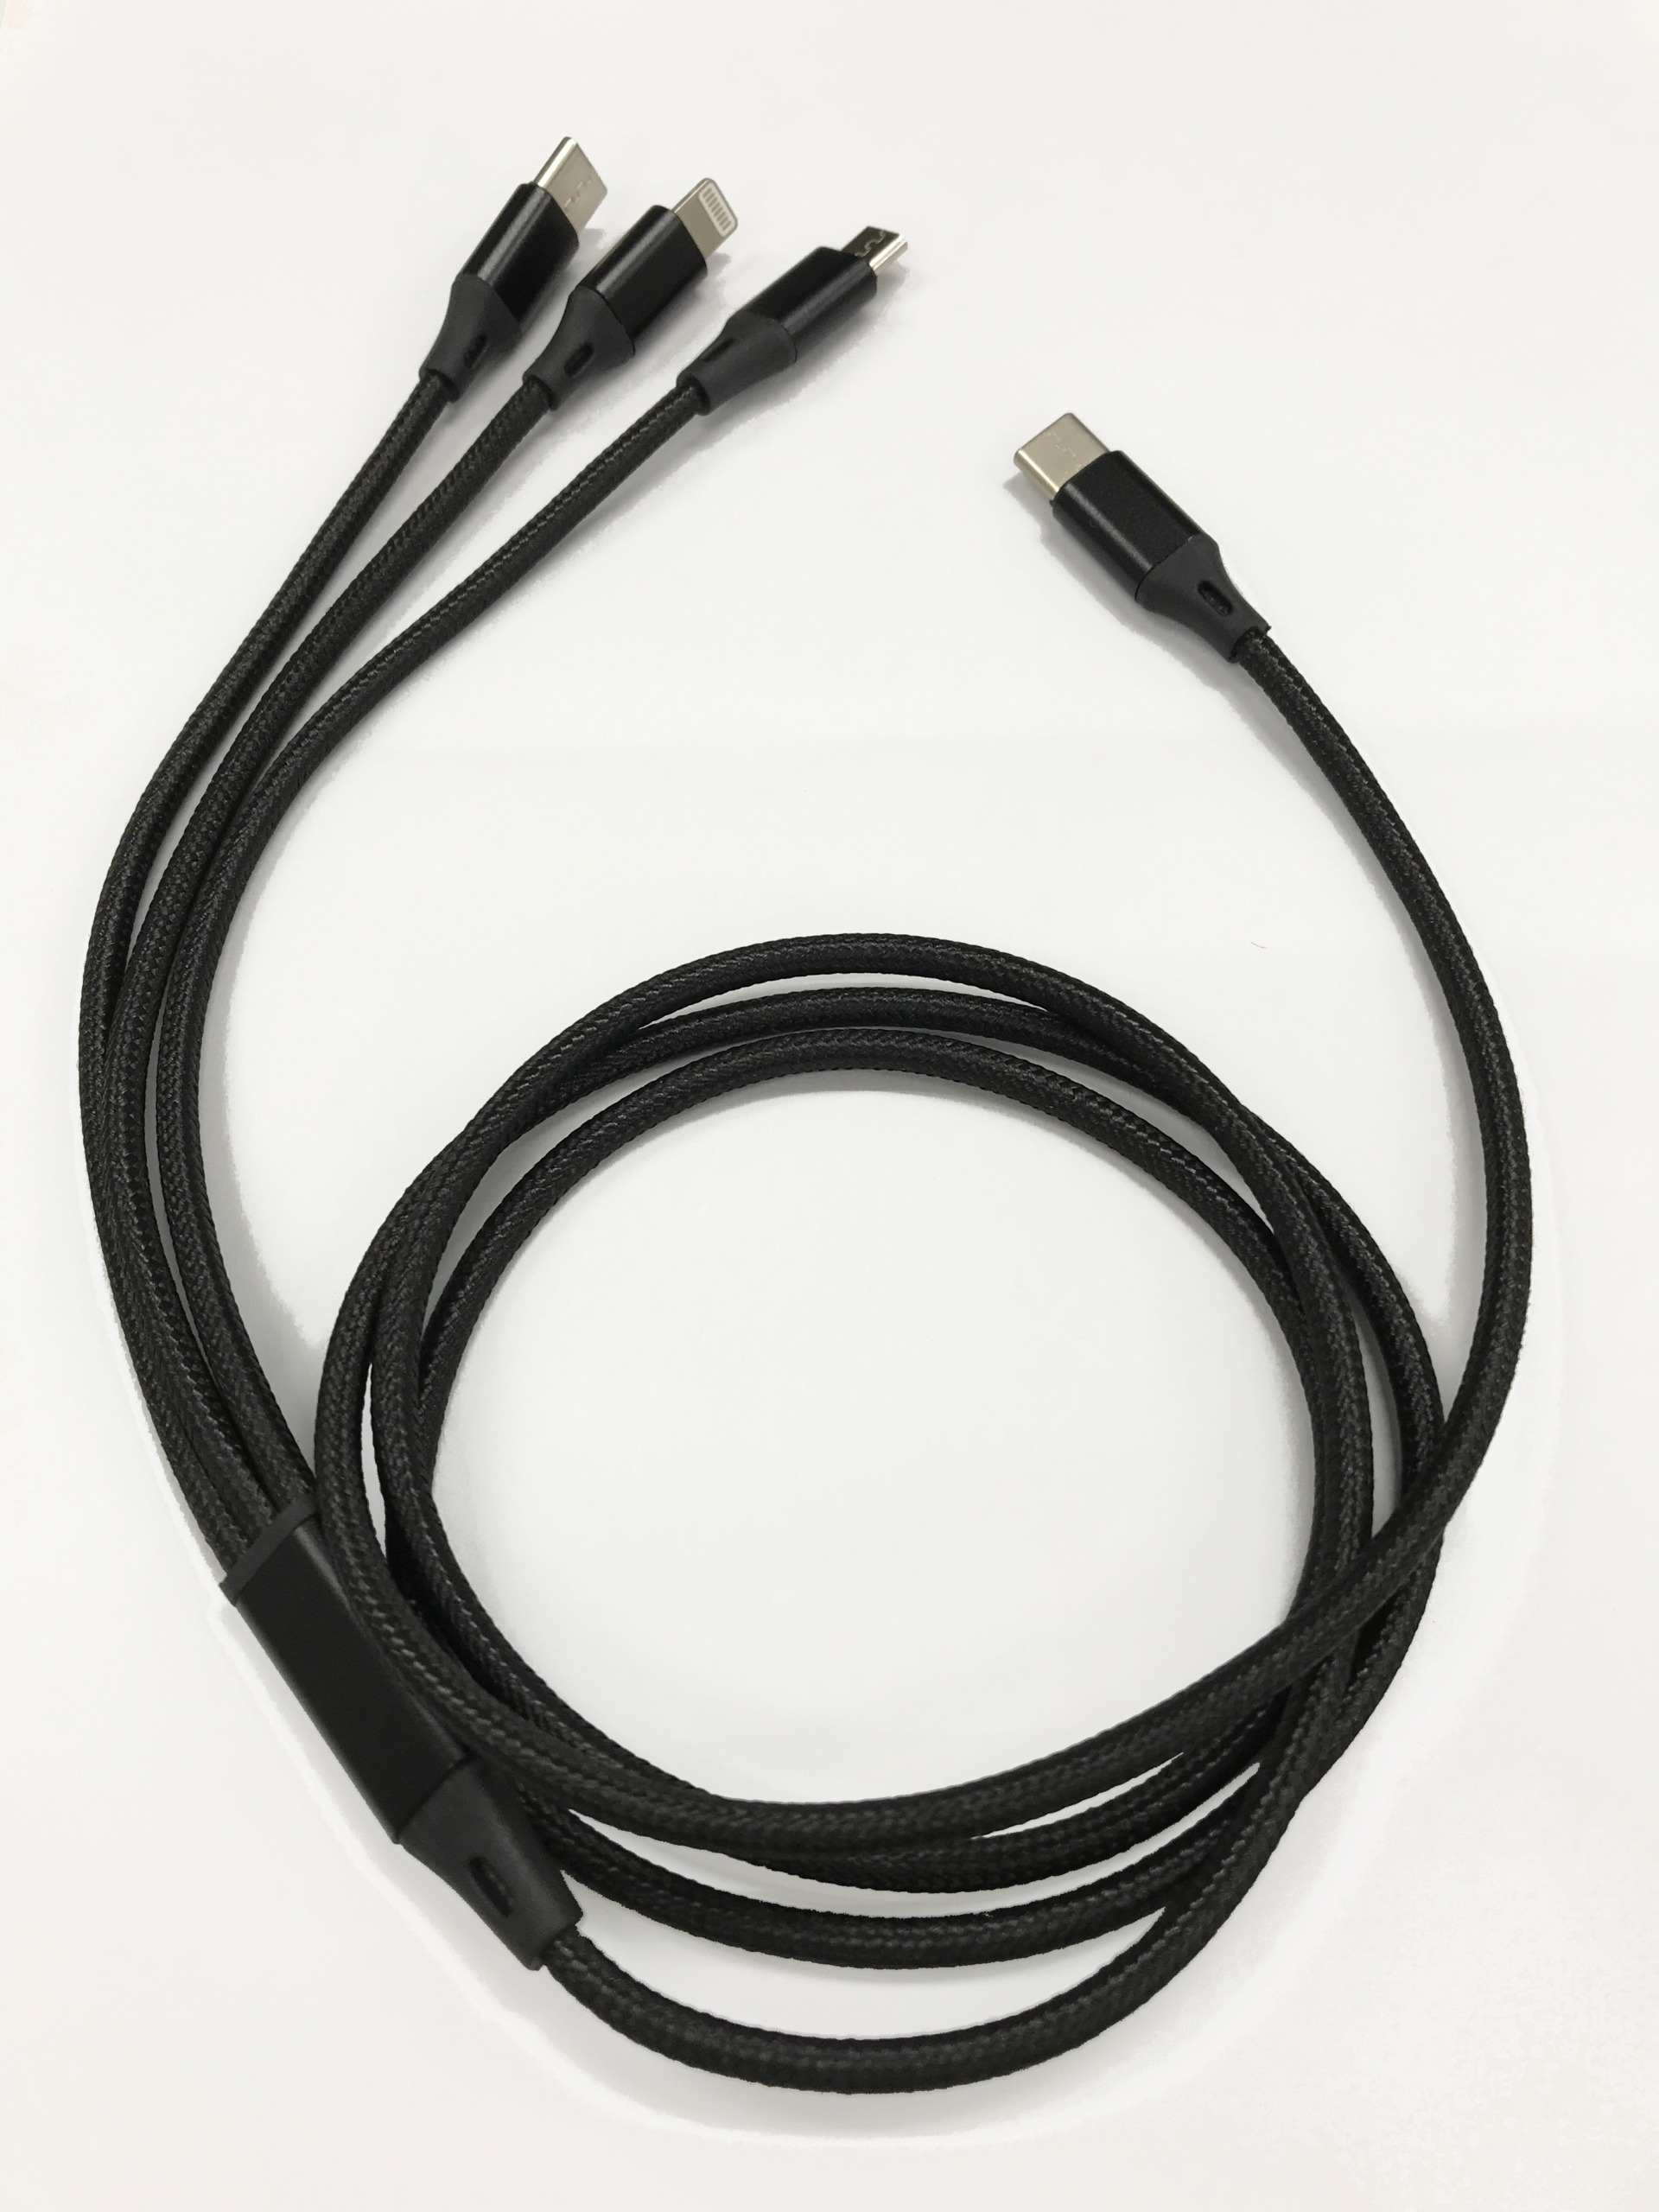 スマートフォン用USBケーブルType-C(2.0) 3in1 MicroUSB Type-B+USB Type-C+Lightning(1メートル)